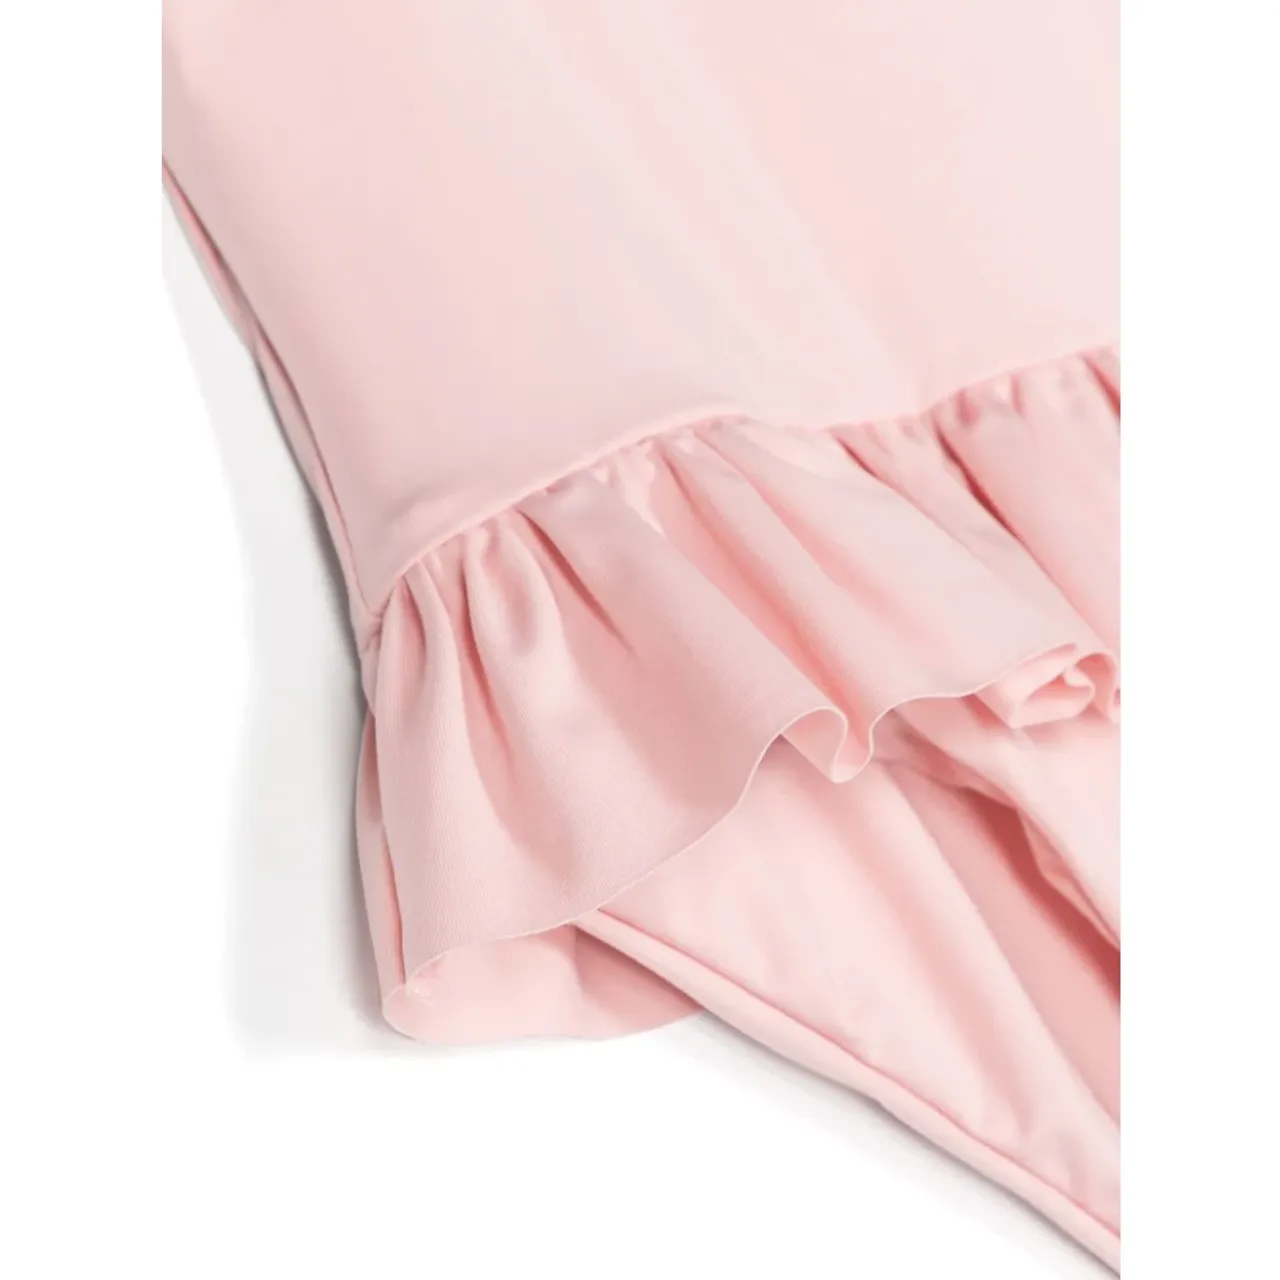 Moncler , Moncler Kids Sea clothing Pink ,Pink female, Sizes: